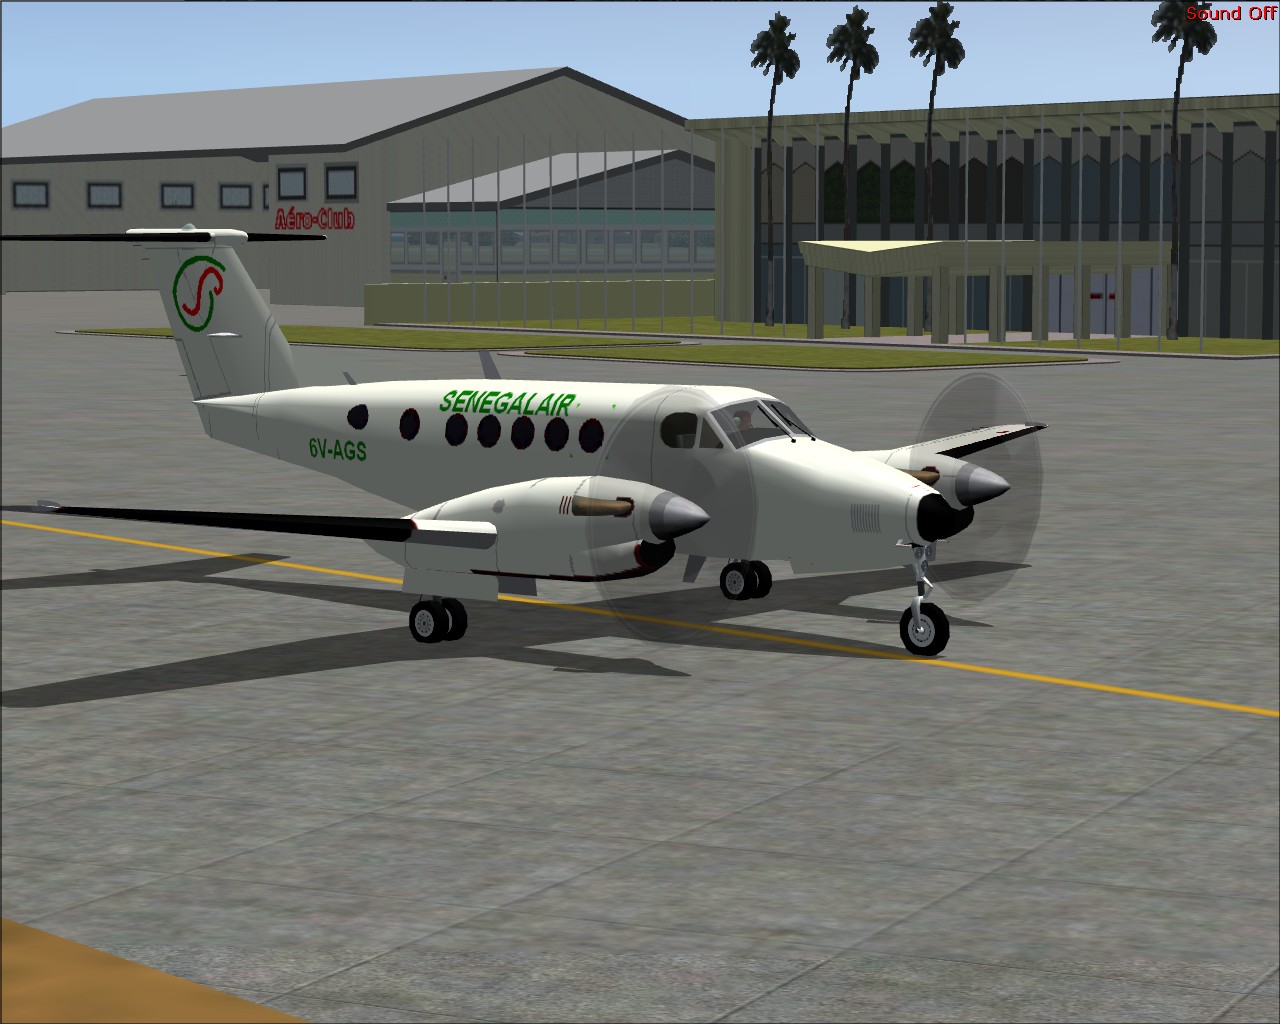 Voici l'avion Senegalair